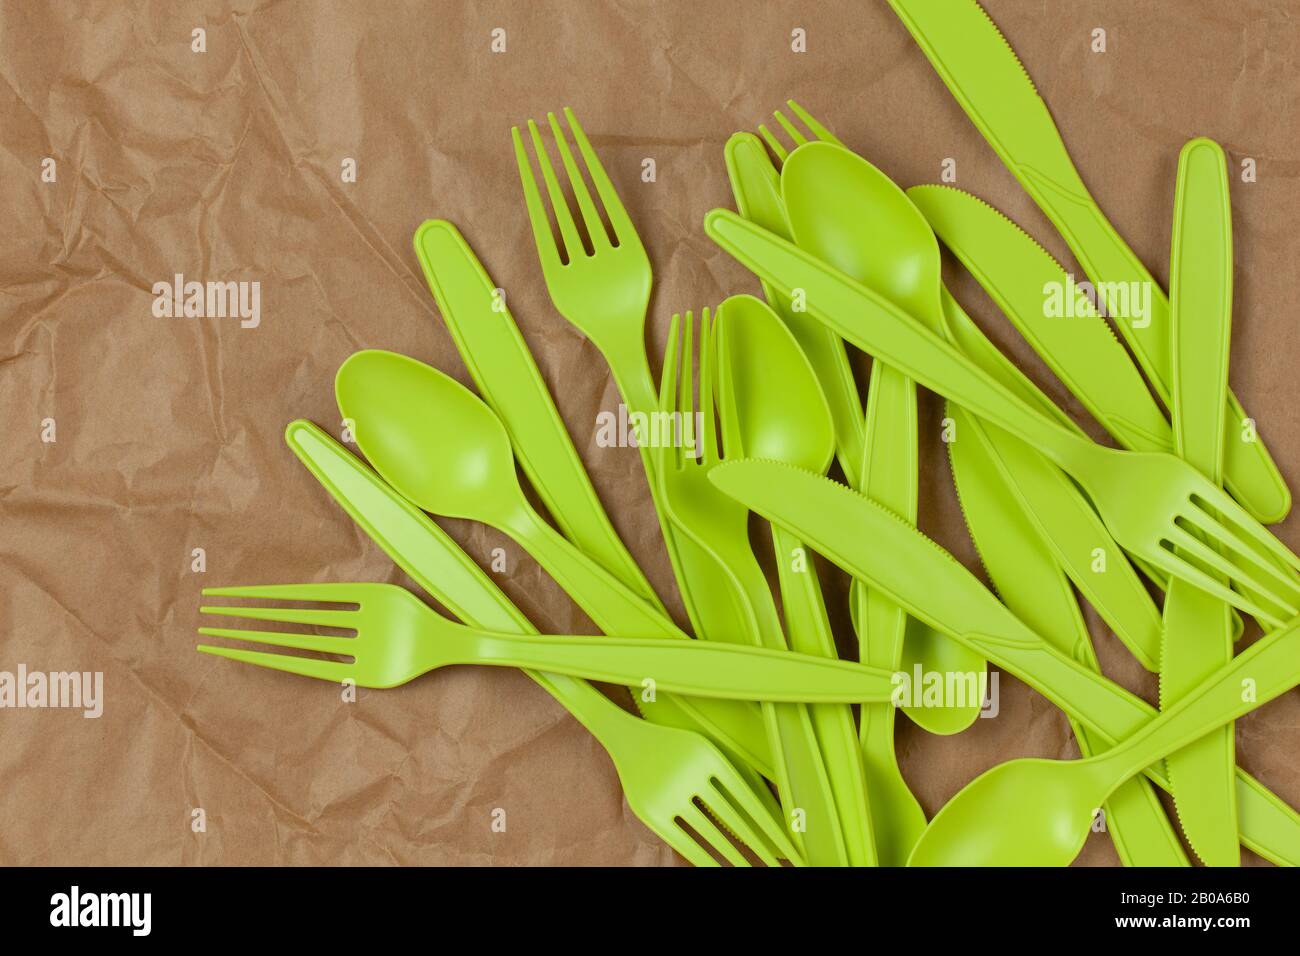 Hintergrund aus wiederverwendbaren, recycelbaren grünen Gabeln, Löffeln, Messern aus Maisstärke auf braun zerknittertem Fertigungspapier. ECO, kein Abfall, Alternative zu p Stockfoto